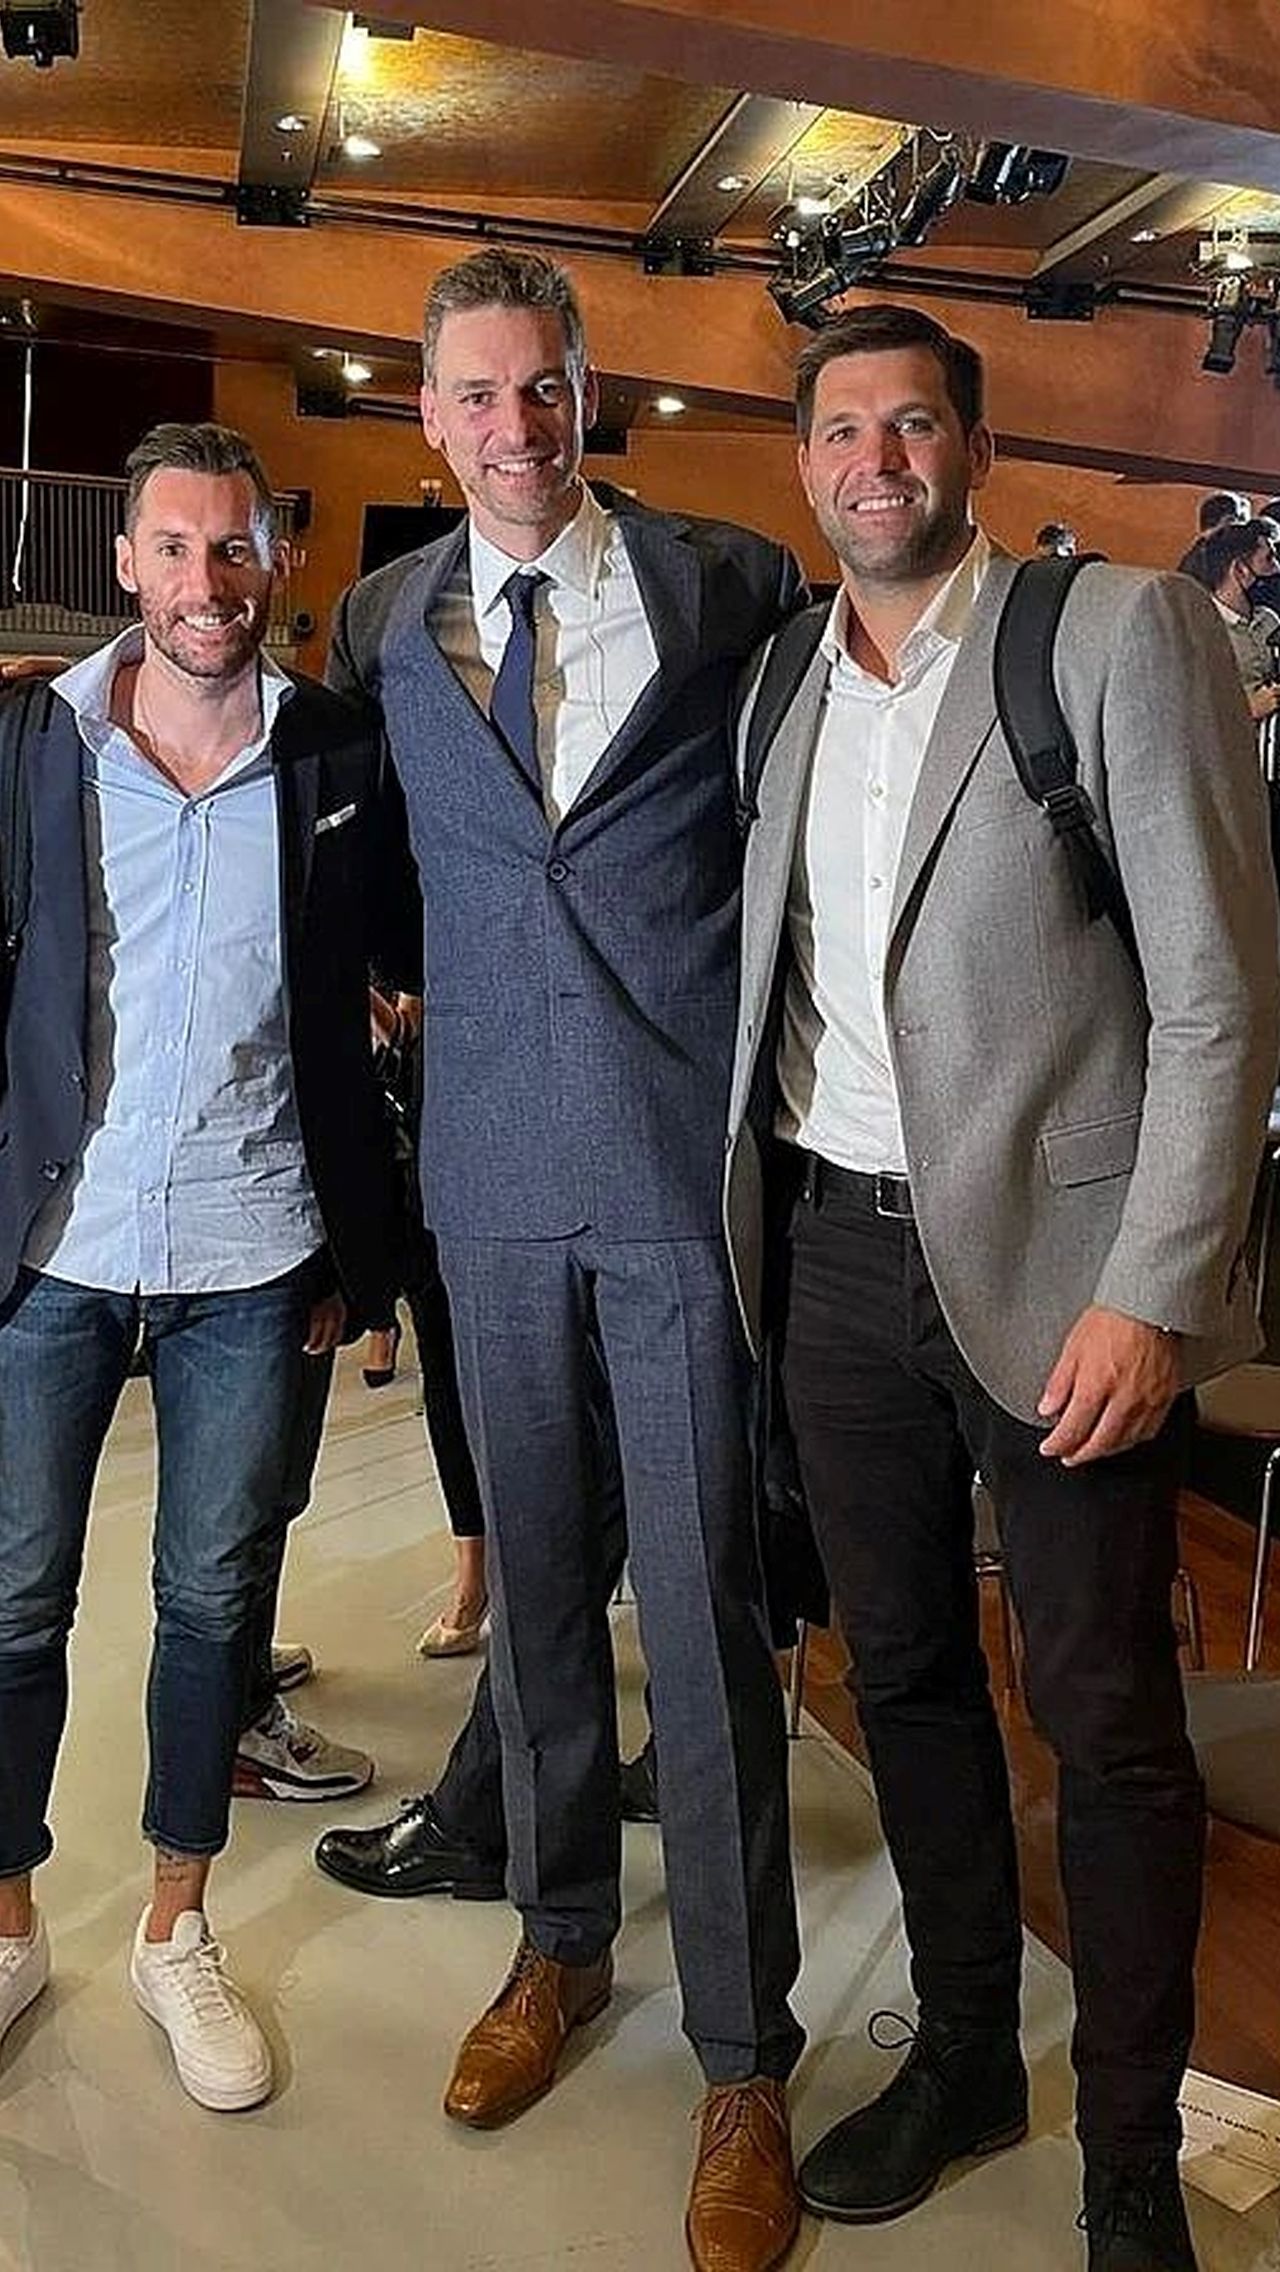 Рейес получил награду перед матчем 26-го тура Евролиги «Реал» — «Барселона». Трибьют-видео в честь Рейеса записали легендарные испанские баскетболисты Серхио Родригес, Серхио Юль, Руди Фернандес (на фото слева) и Пау Газоль (на фото в центре).